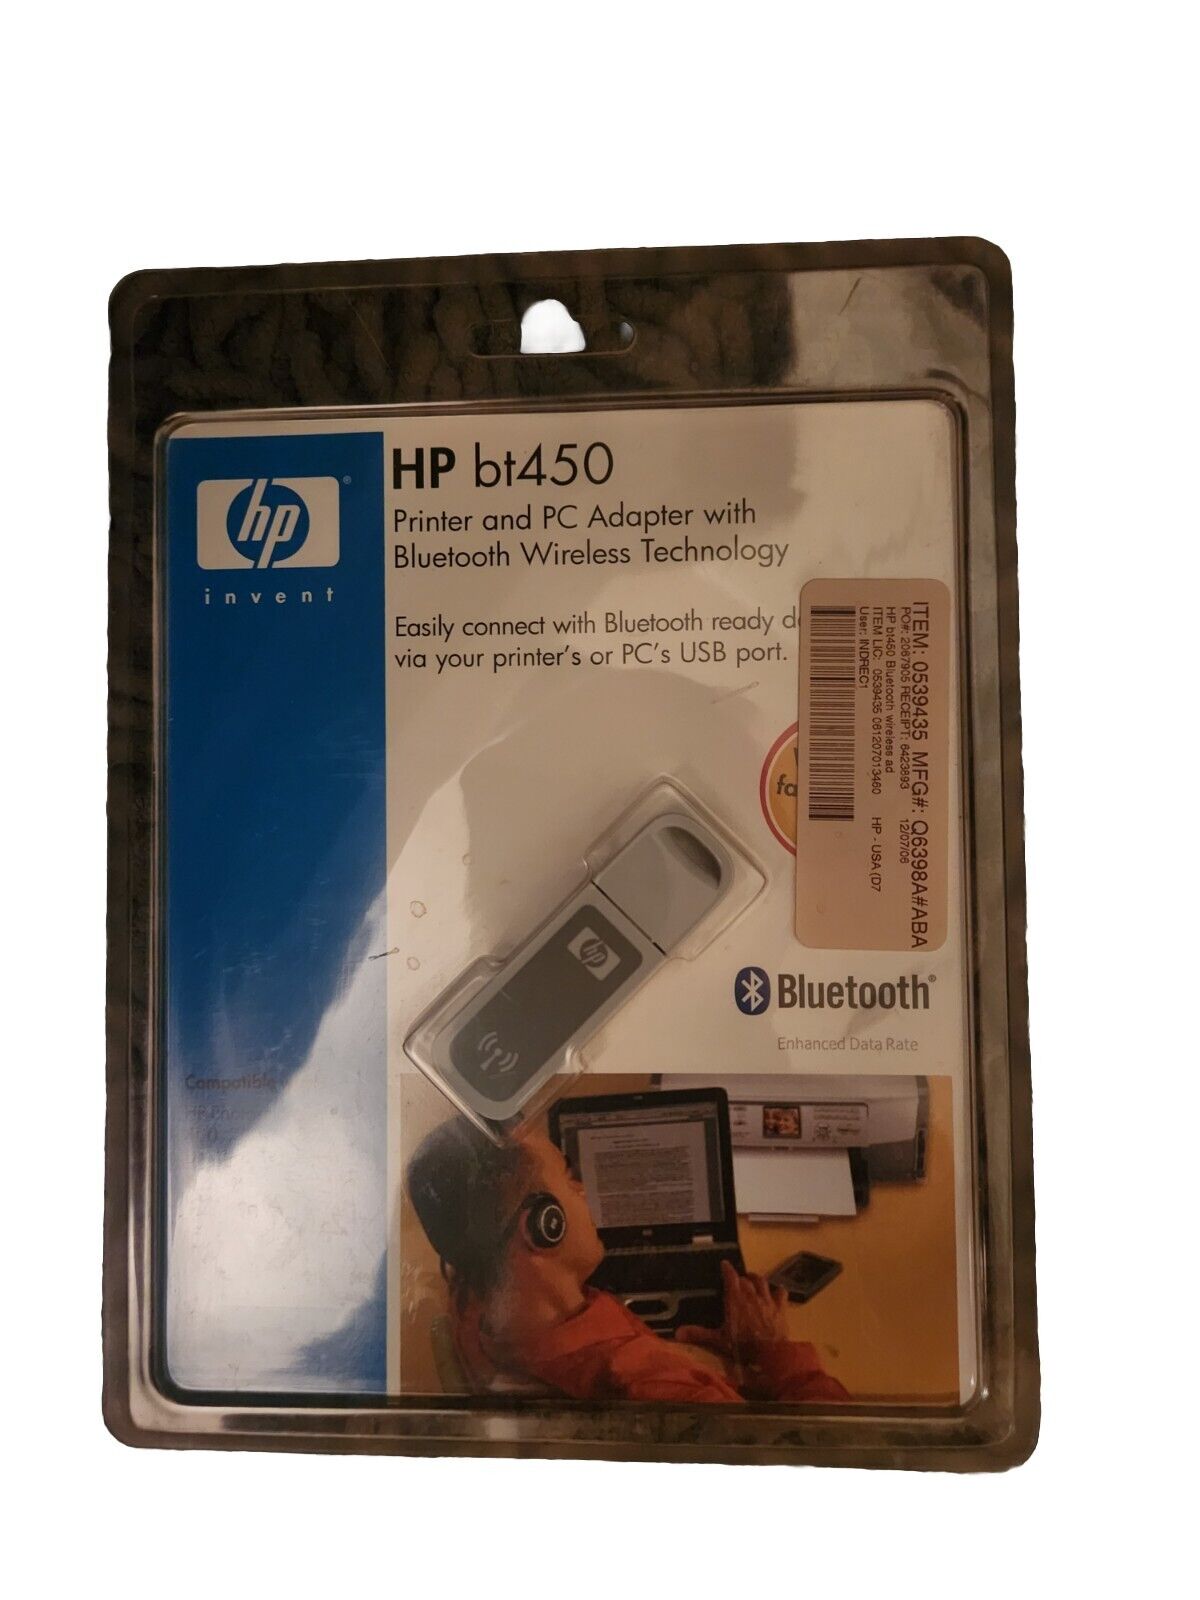 Hewlett Packard Bluetooth Adapter HP Q6398A PC Printer Wireless bt450 NOS Sealed